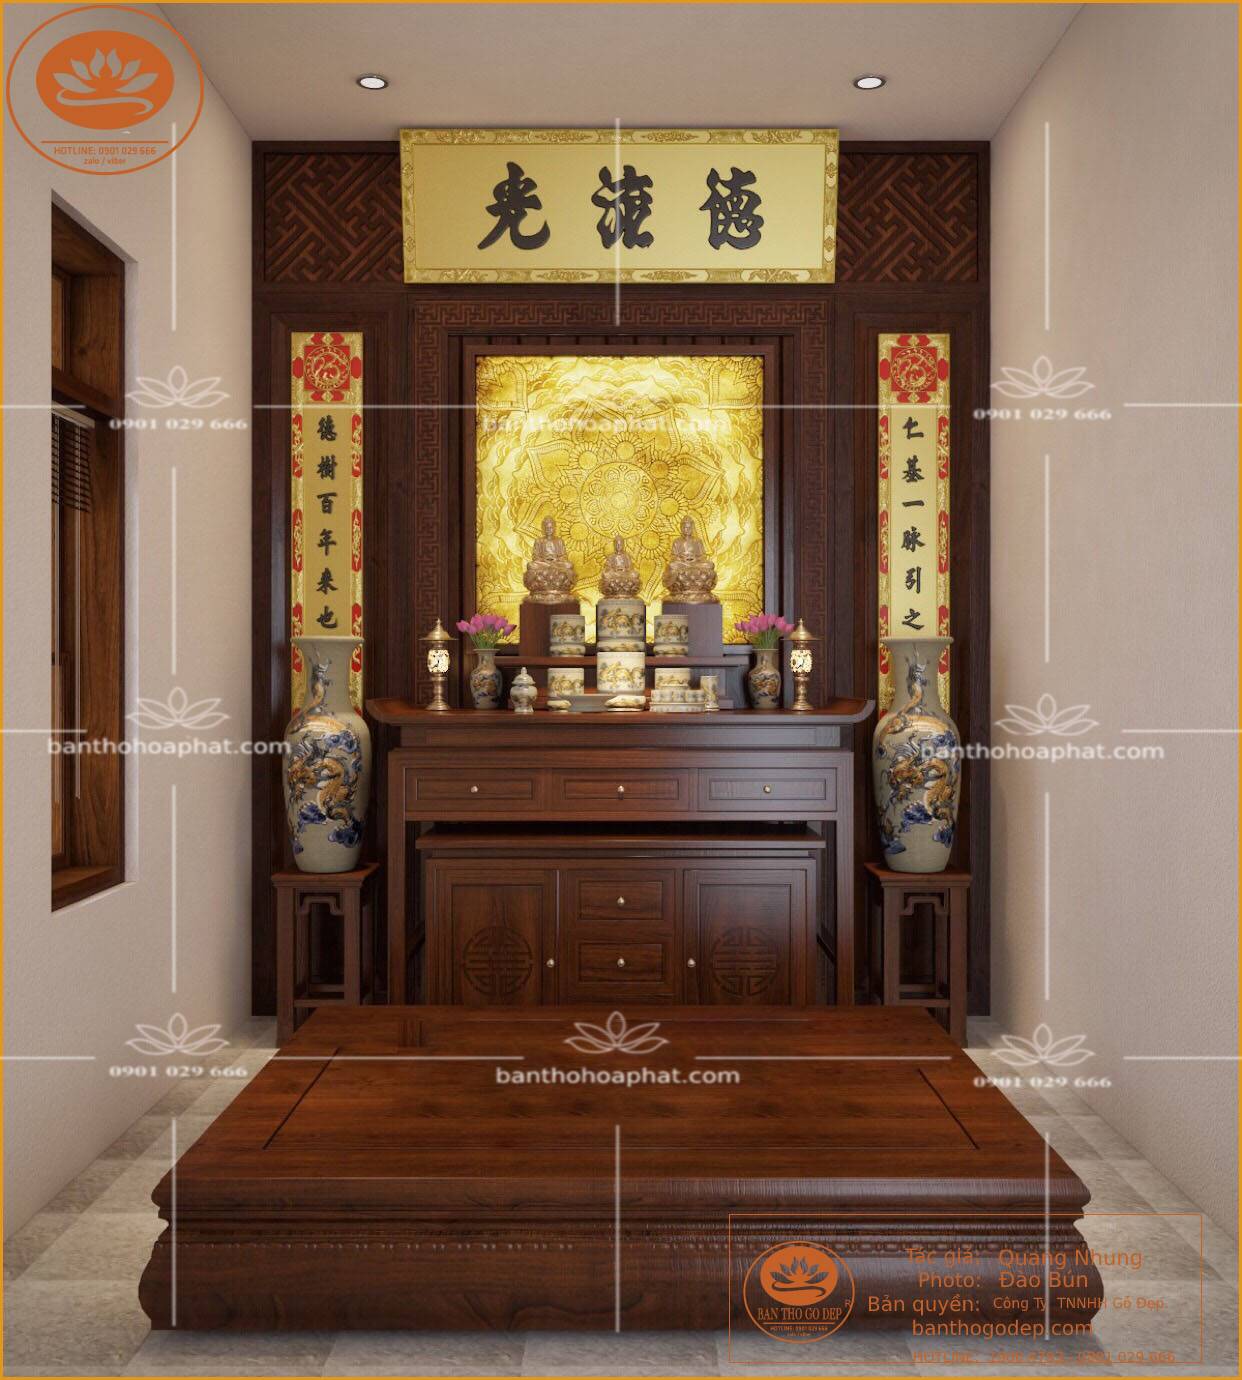 Hướng dẫn chọn vị trí đặt bàn thờ Phật trong nhà đúng chuẩn